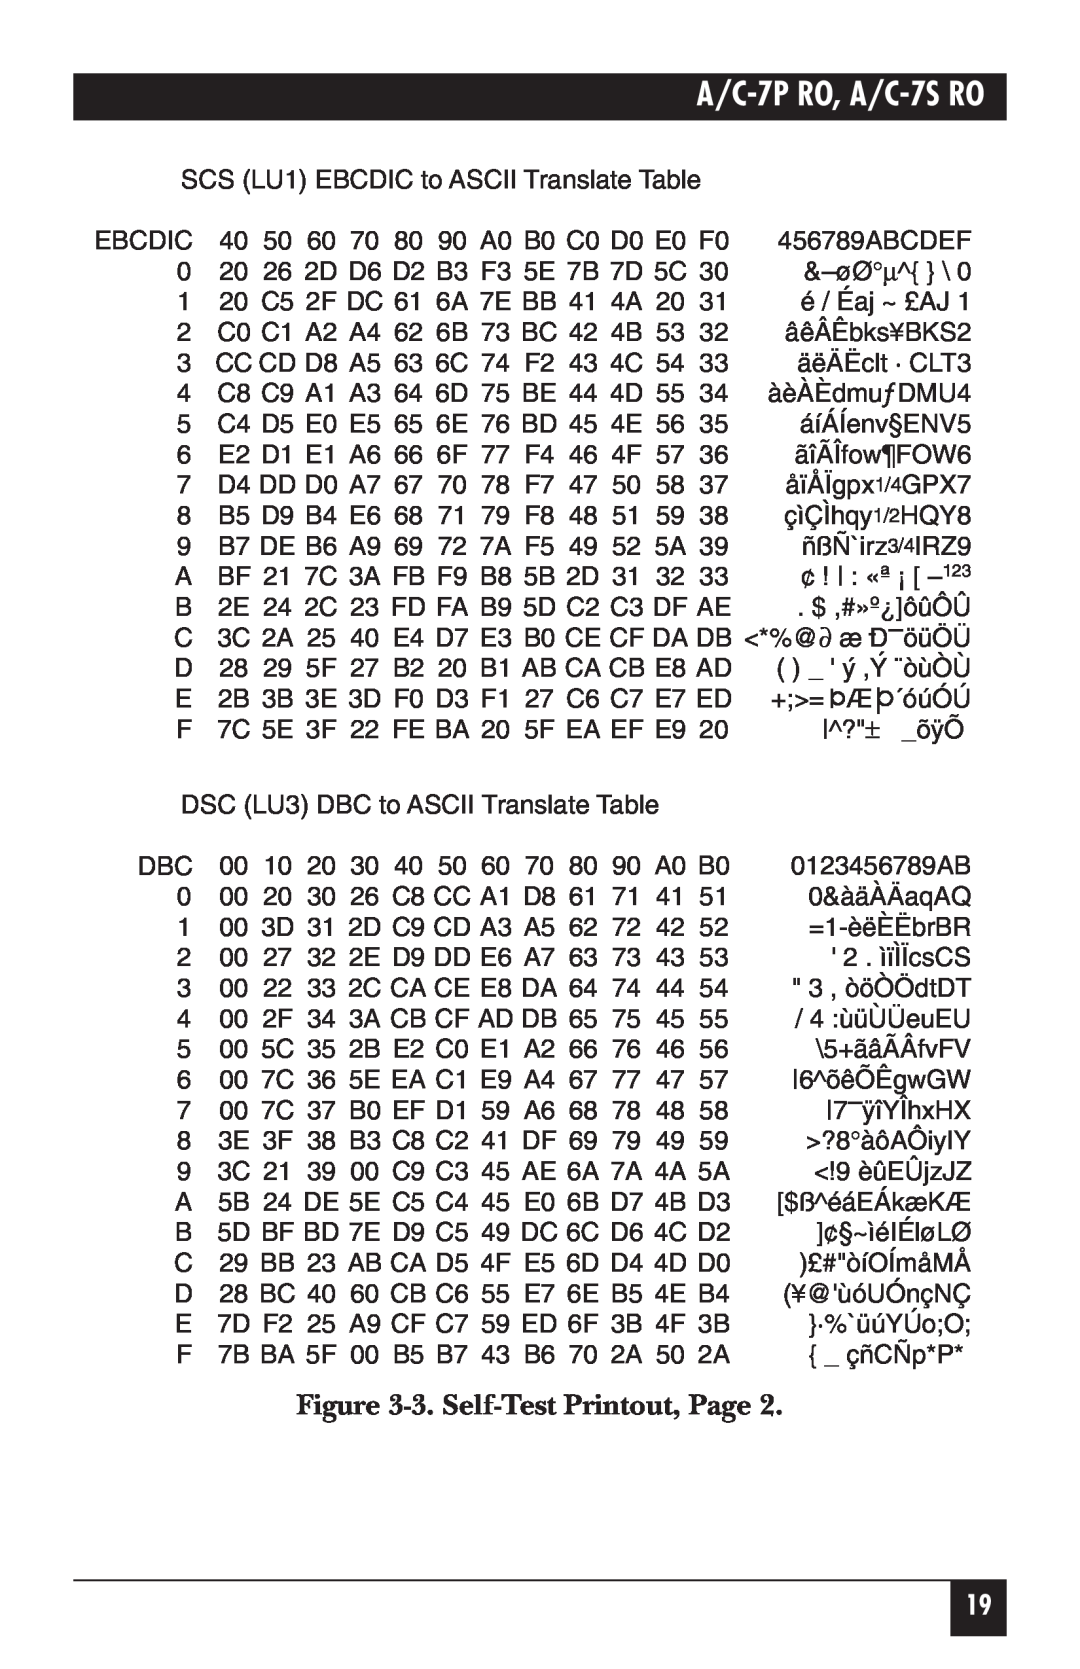 Black Box manual 3. Self-Test Printout, Page, A/C-7P RO, A/C-7S RO 